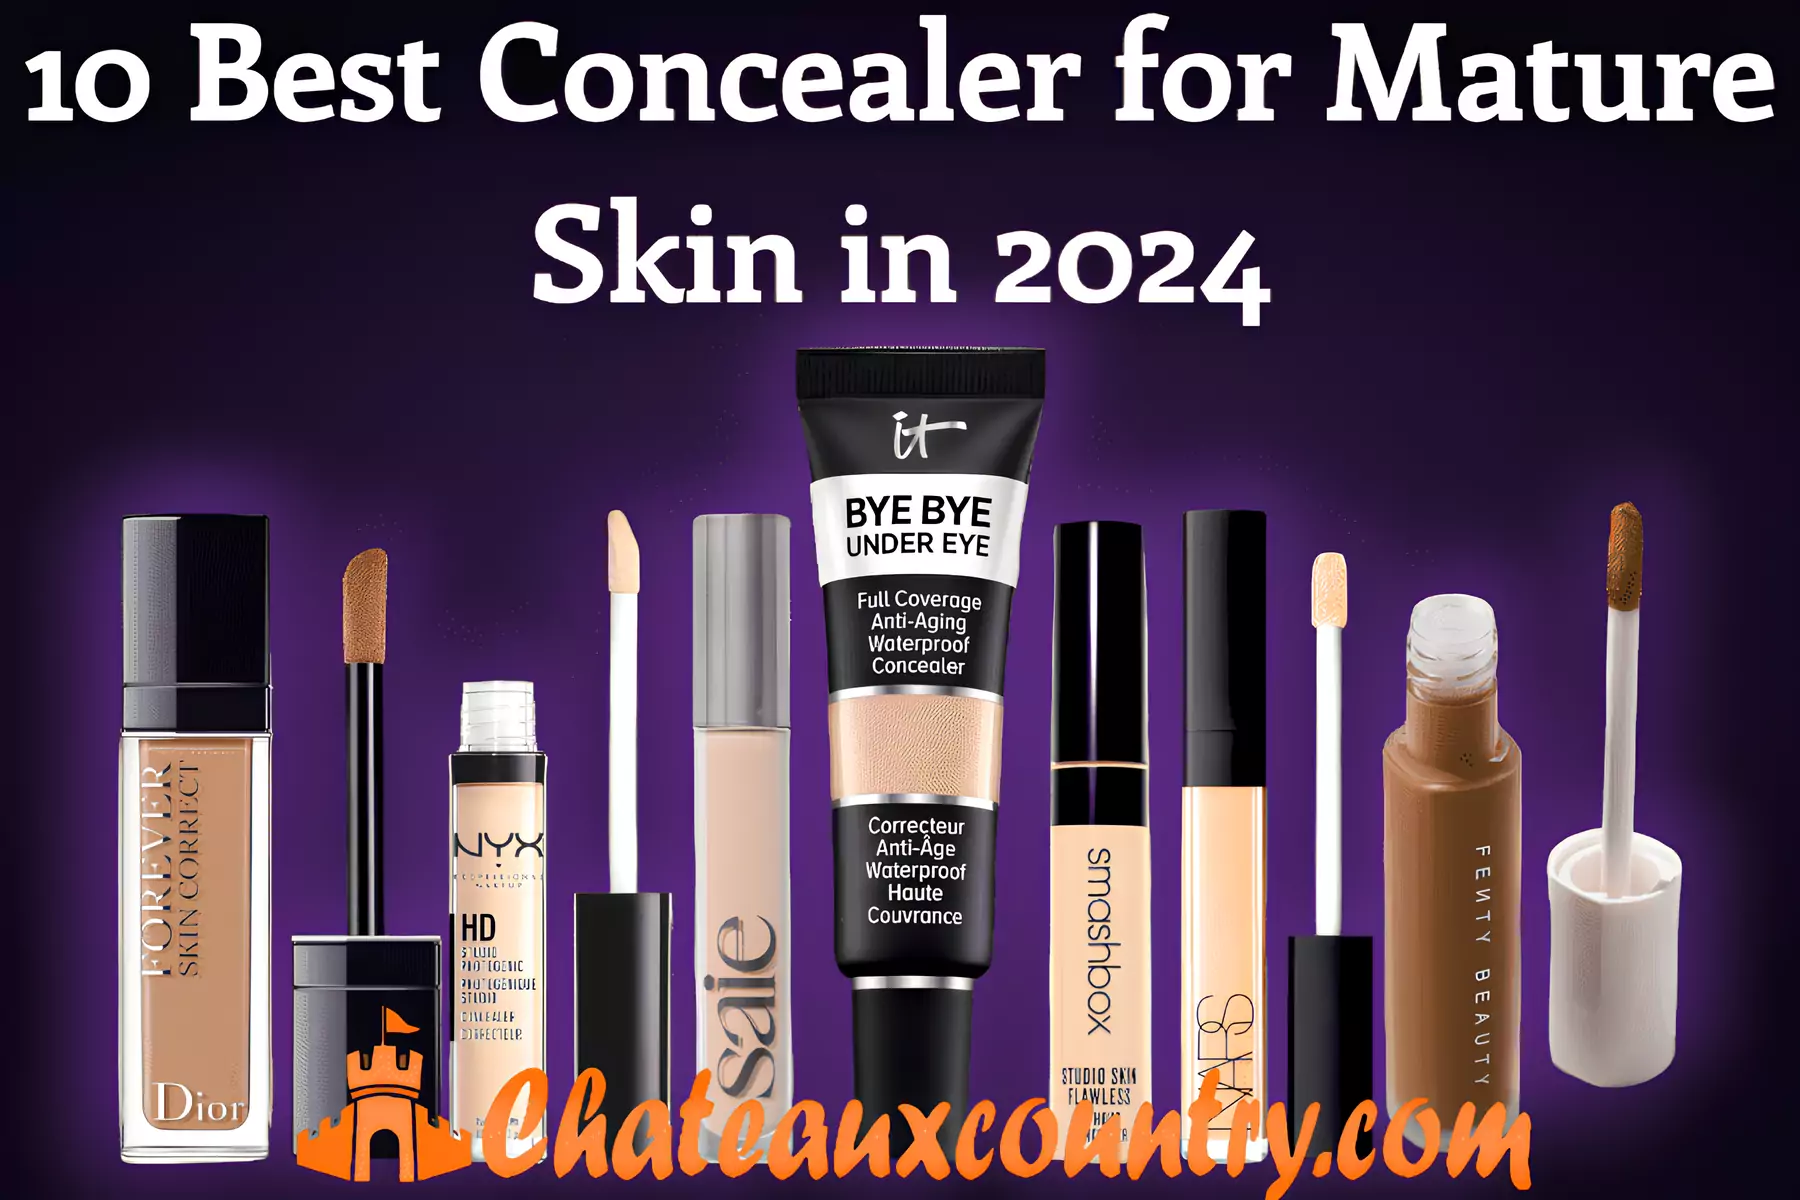 10 Best Concealer for Mature Skin in 2024